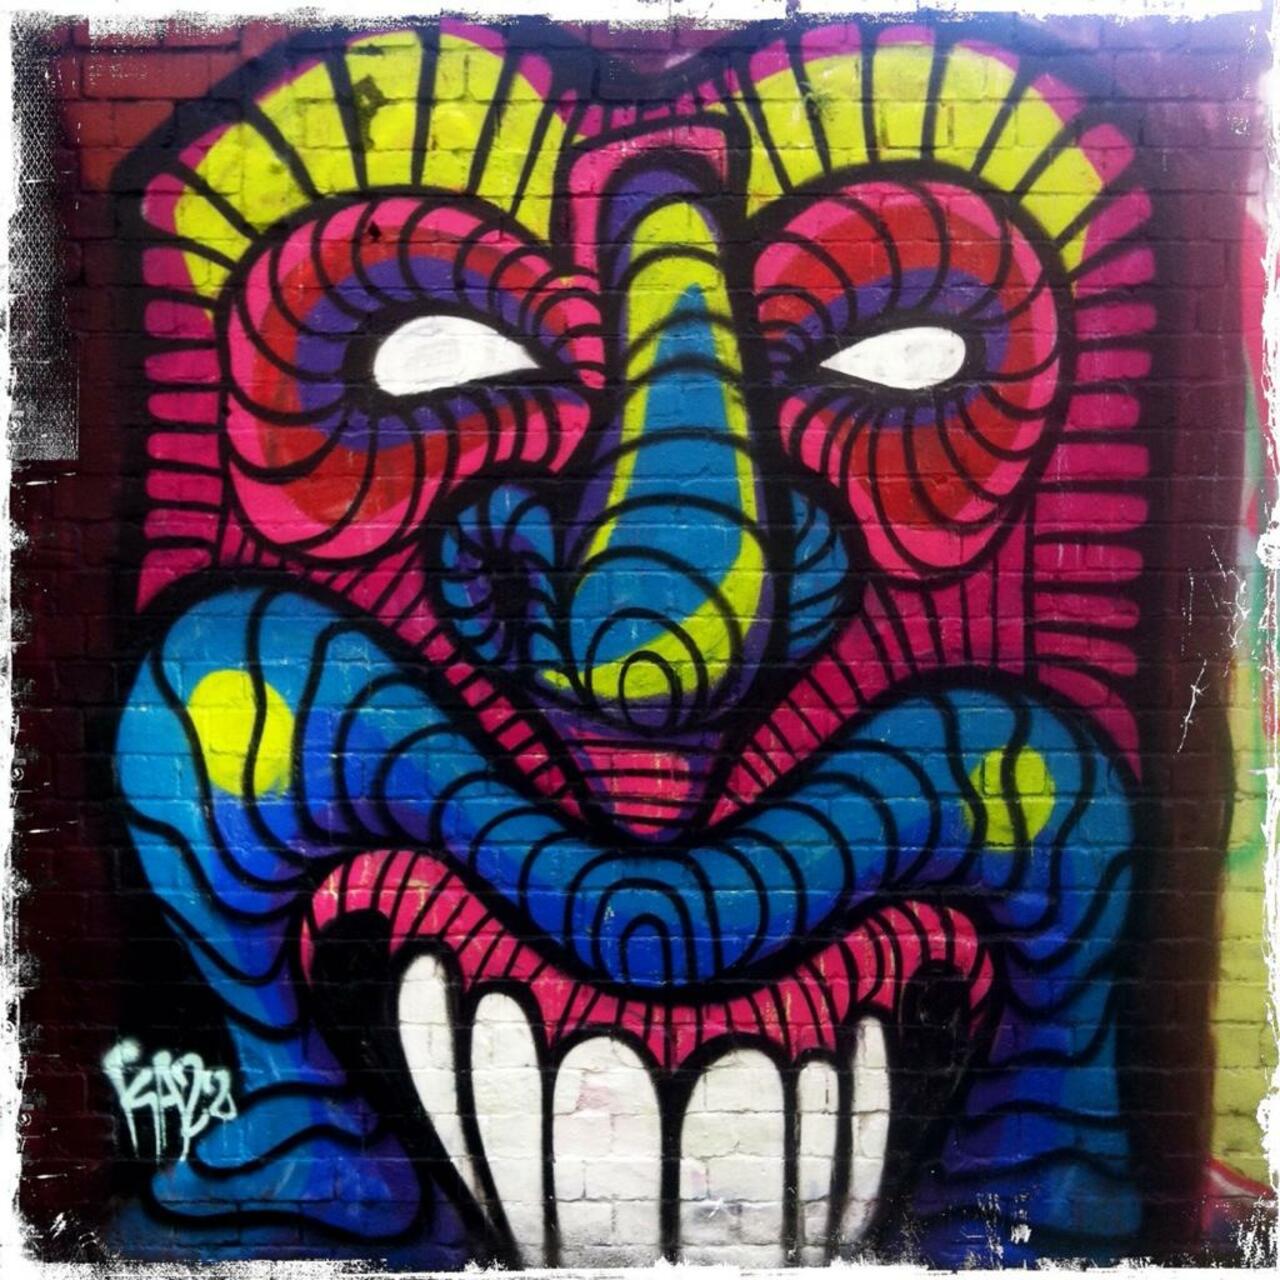 Streetart on Grimsby Street

#art #graffiti http://t.co/IvKigdXMEX